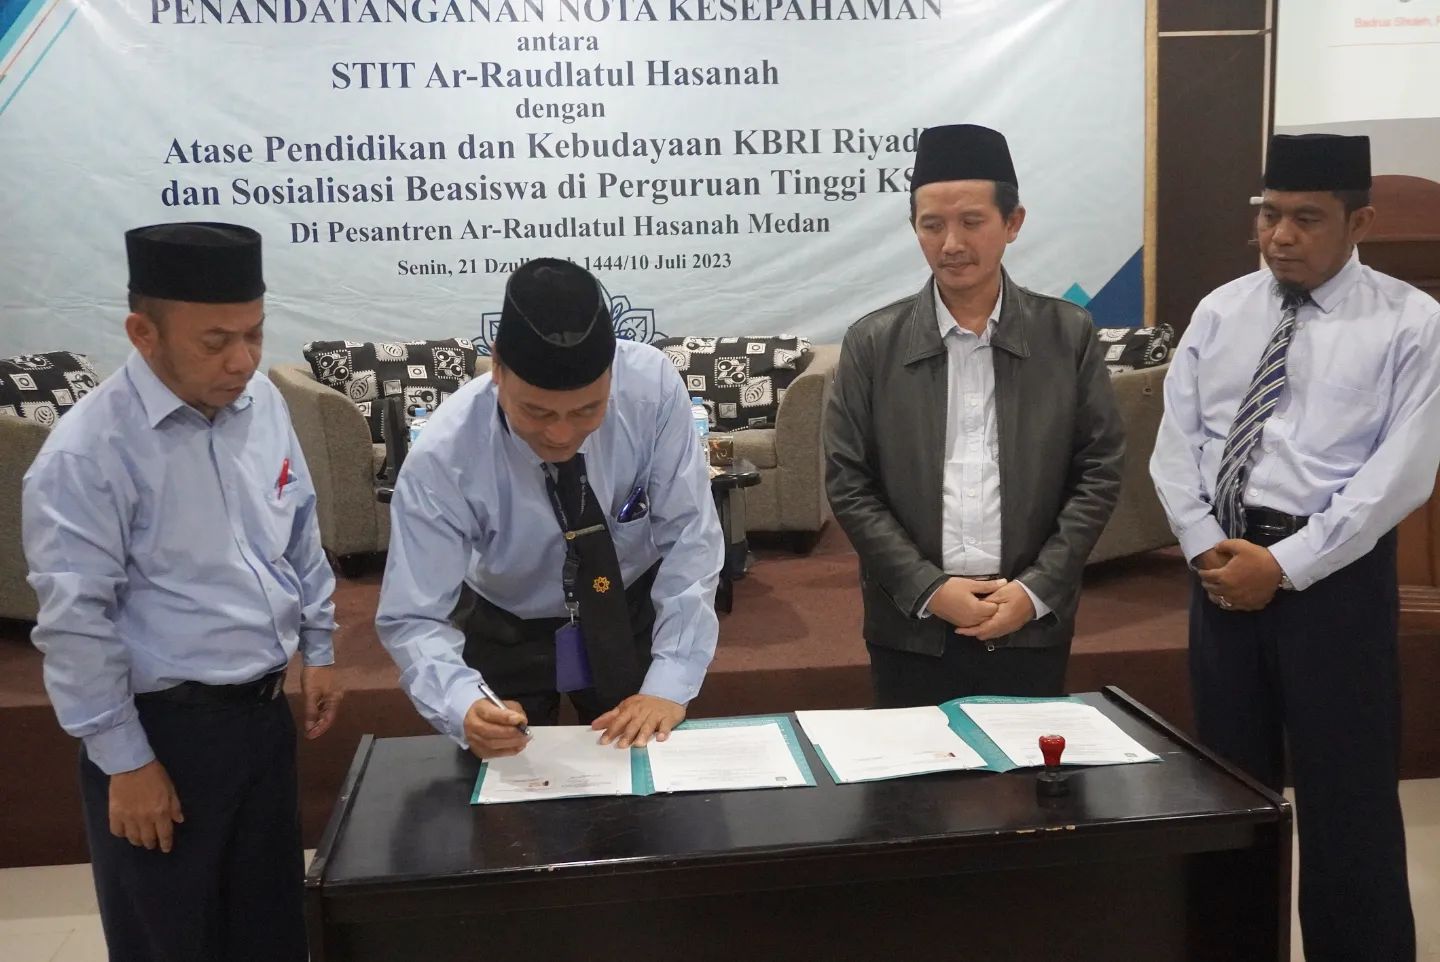 Bersama PTKIS Se-Sumatera Utara, STIT-RH Berkomitmen Meningkatkan Mutu Pendidikan Tinggi